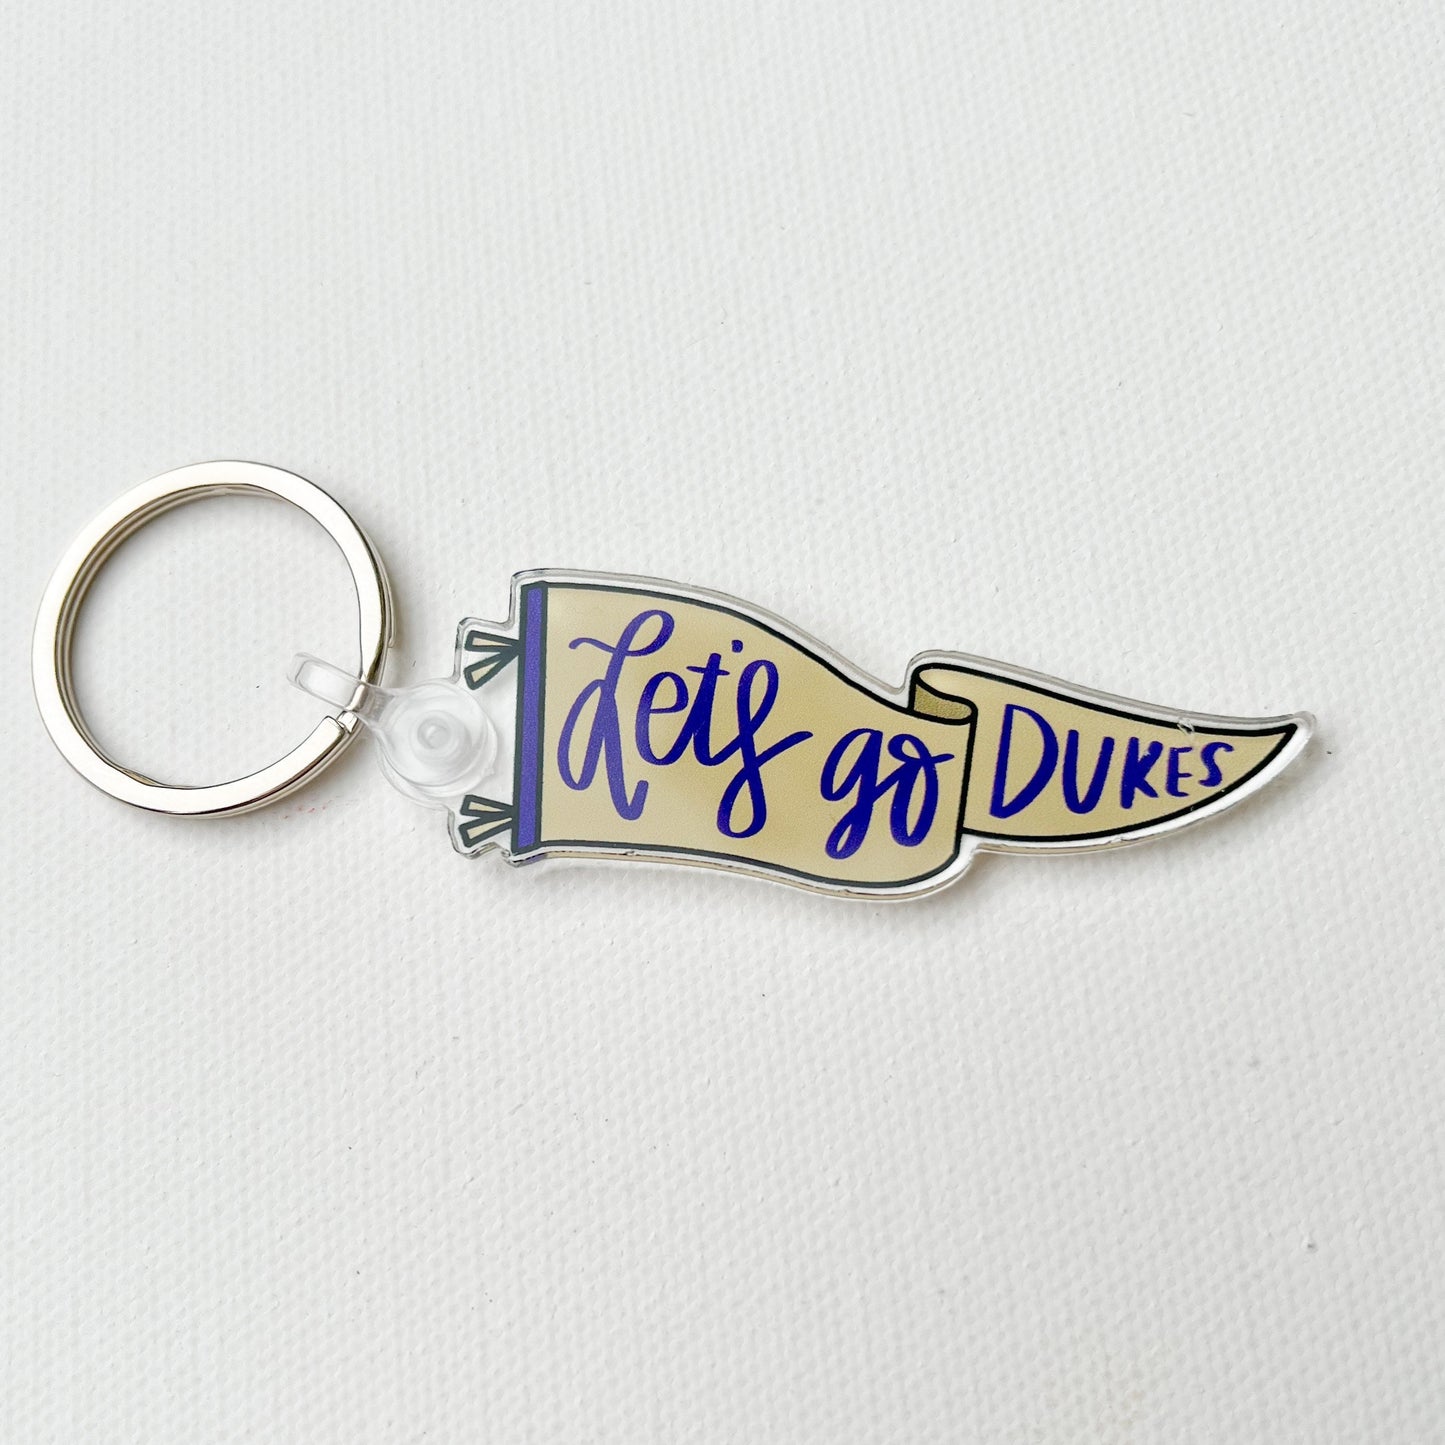 Let’s go dukes - pennant flag acrylic keychain